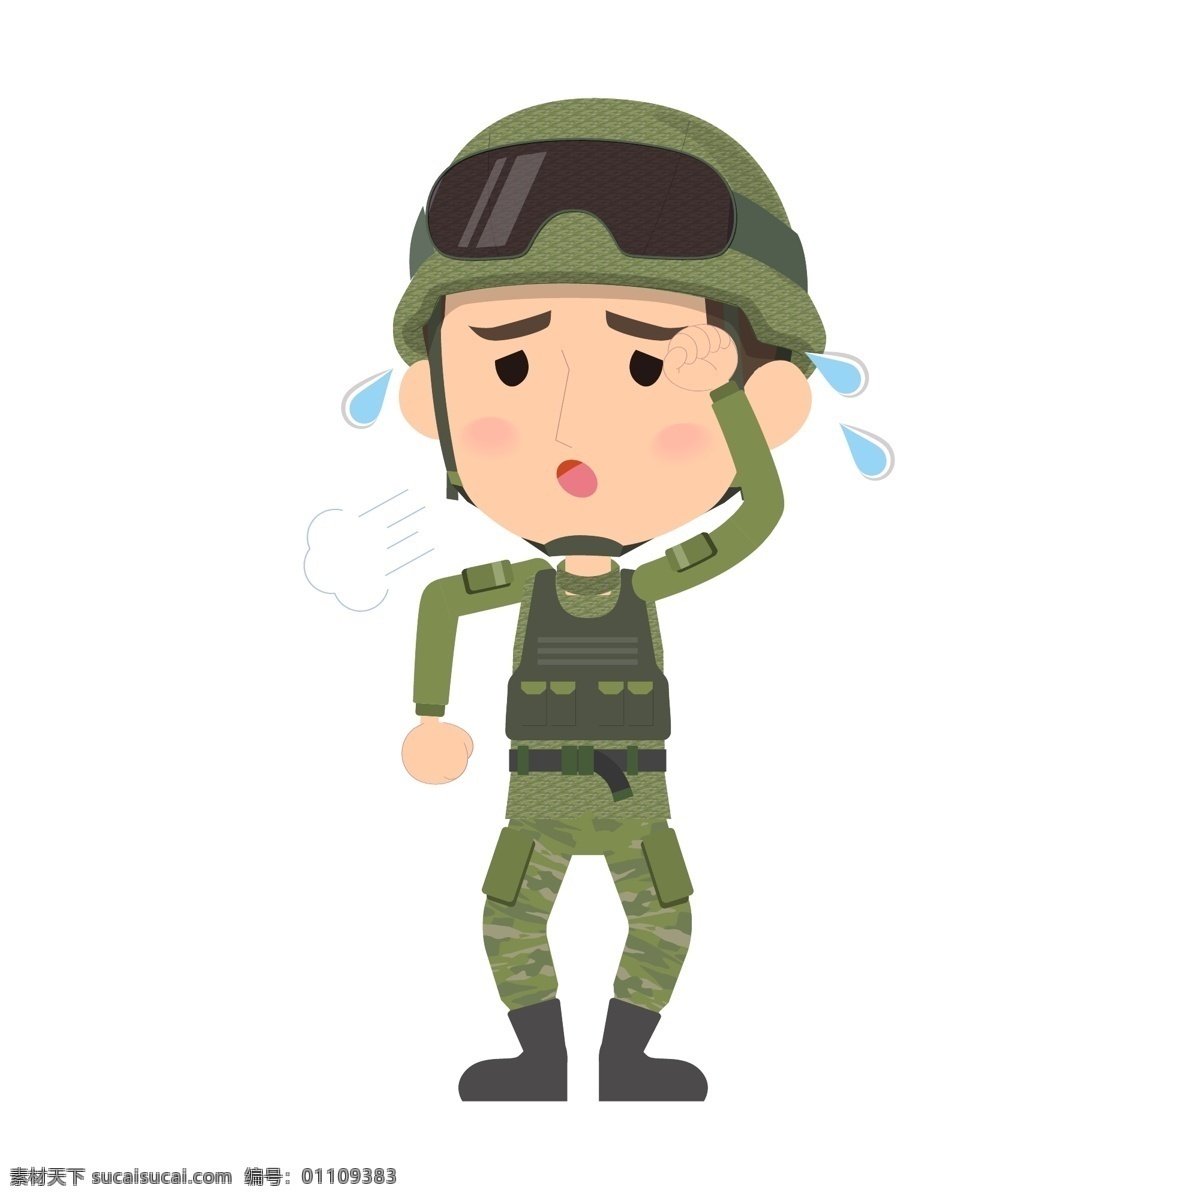 卡通战士 可爱 卡通 扁平化 战士 军人 士兵 迷彩服 人物 背景 海报 宣传 矢量素材 卡通军人